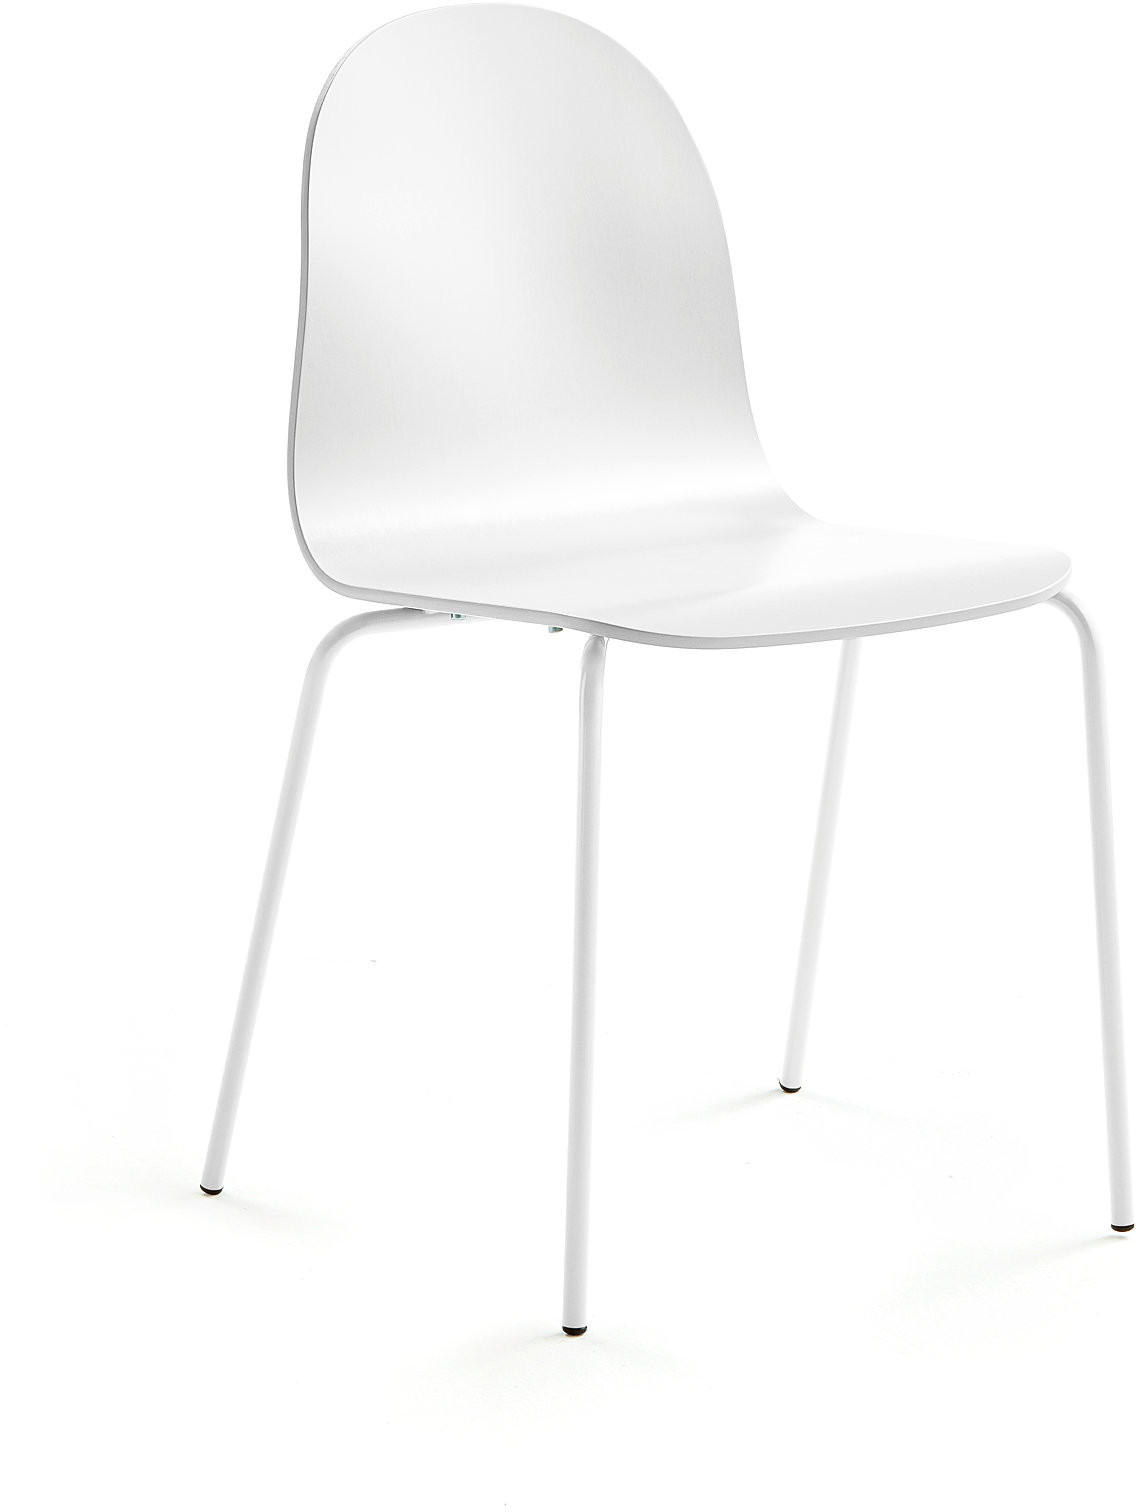 AJ Produkty Krzesło GANDER, 4 nogi, siedzisko 450 mm, lakierowany, beżowy